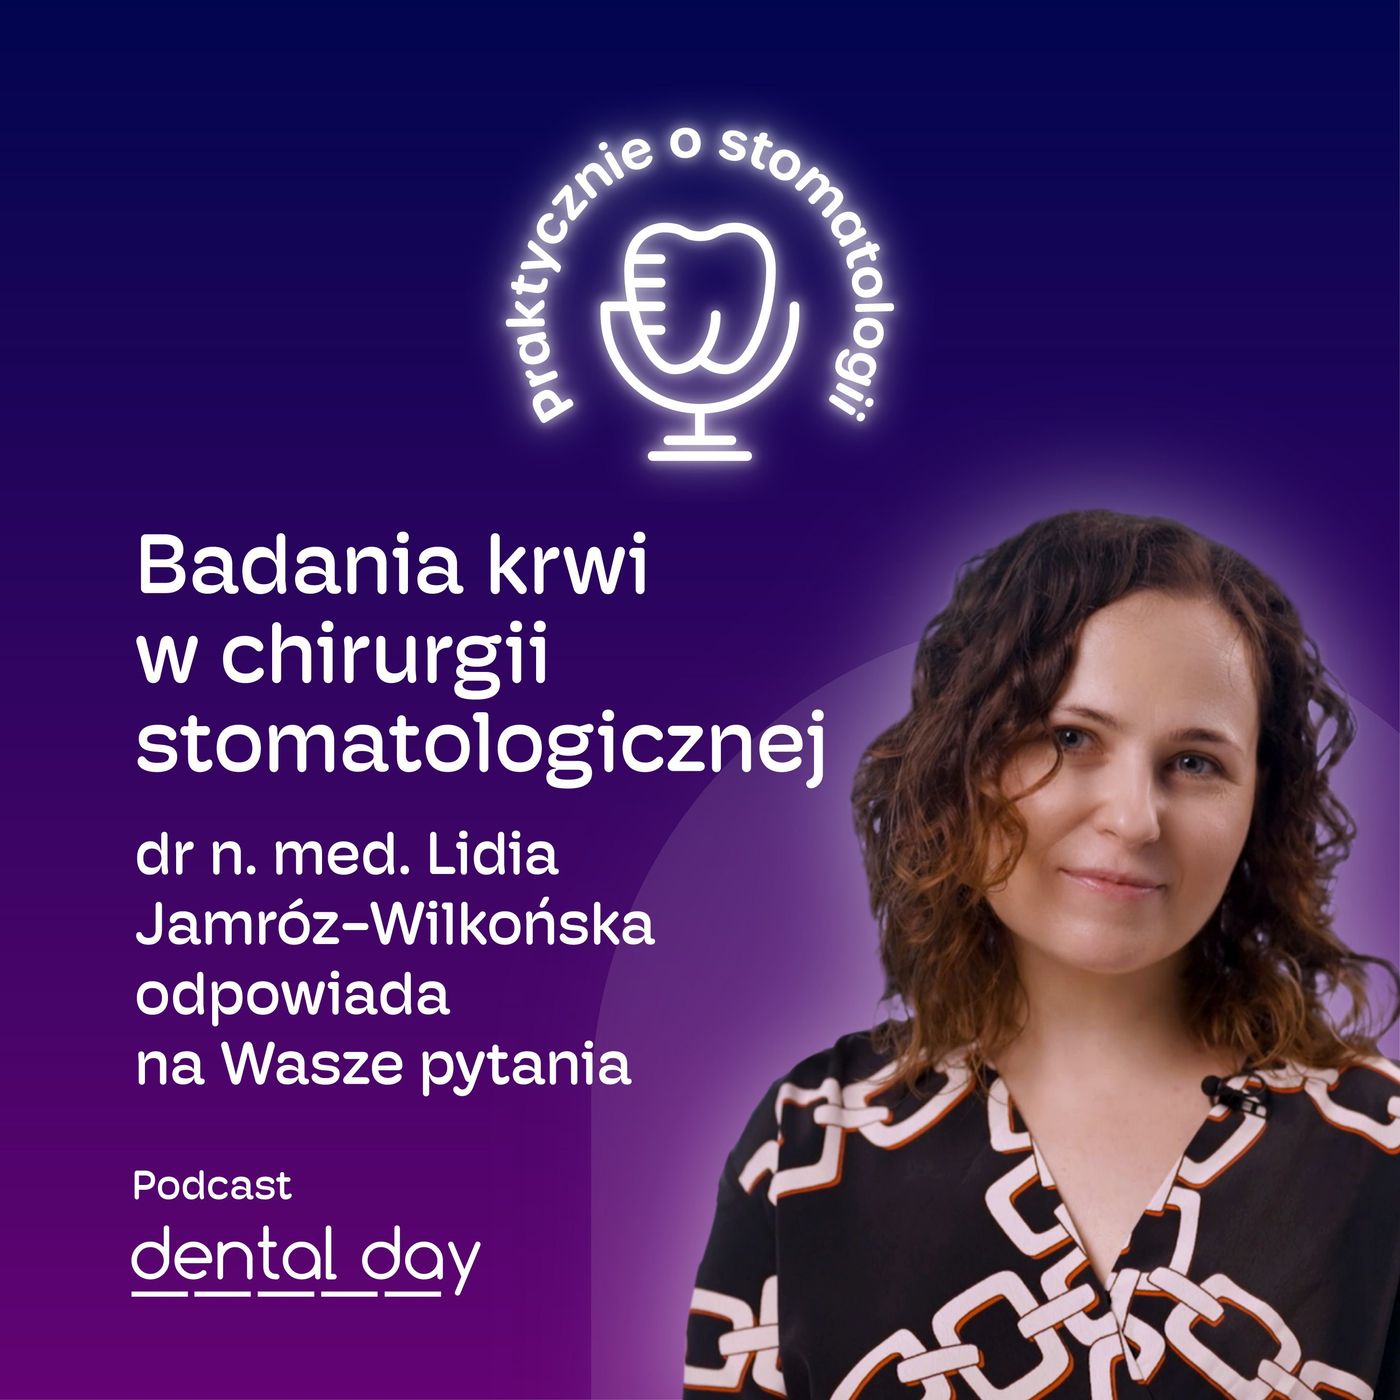 Badania krwi w chirurgii stomatologicznej - dr n. med. Lidia Jamróz-Wilkońska odpowiada na Wasze pytania